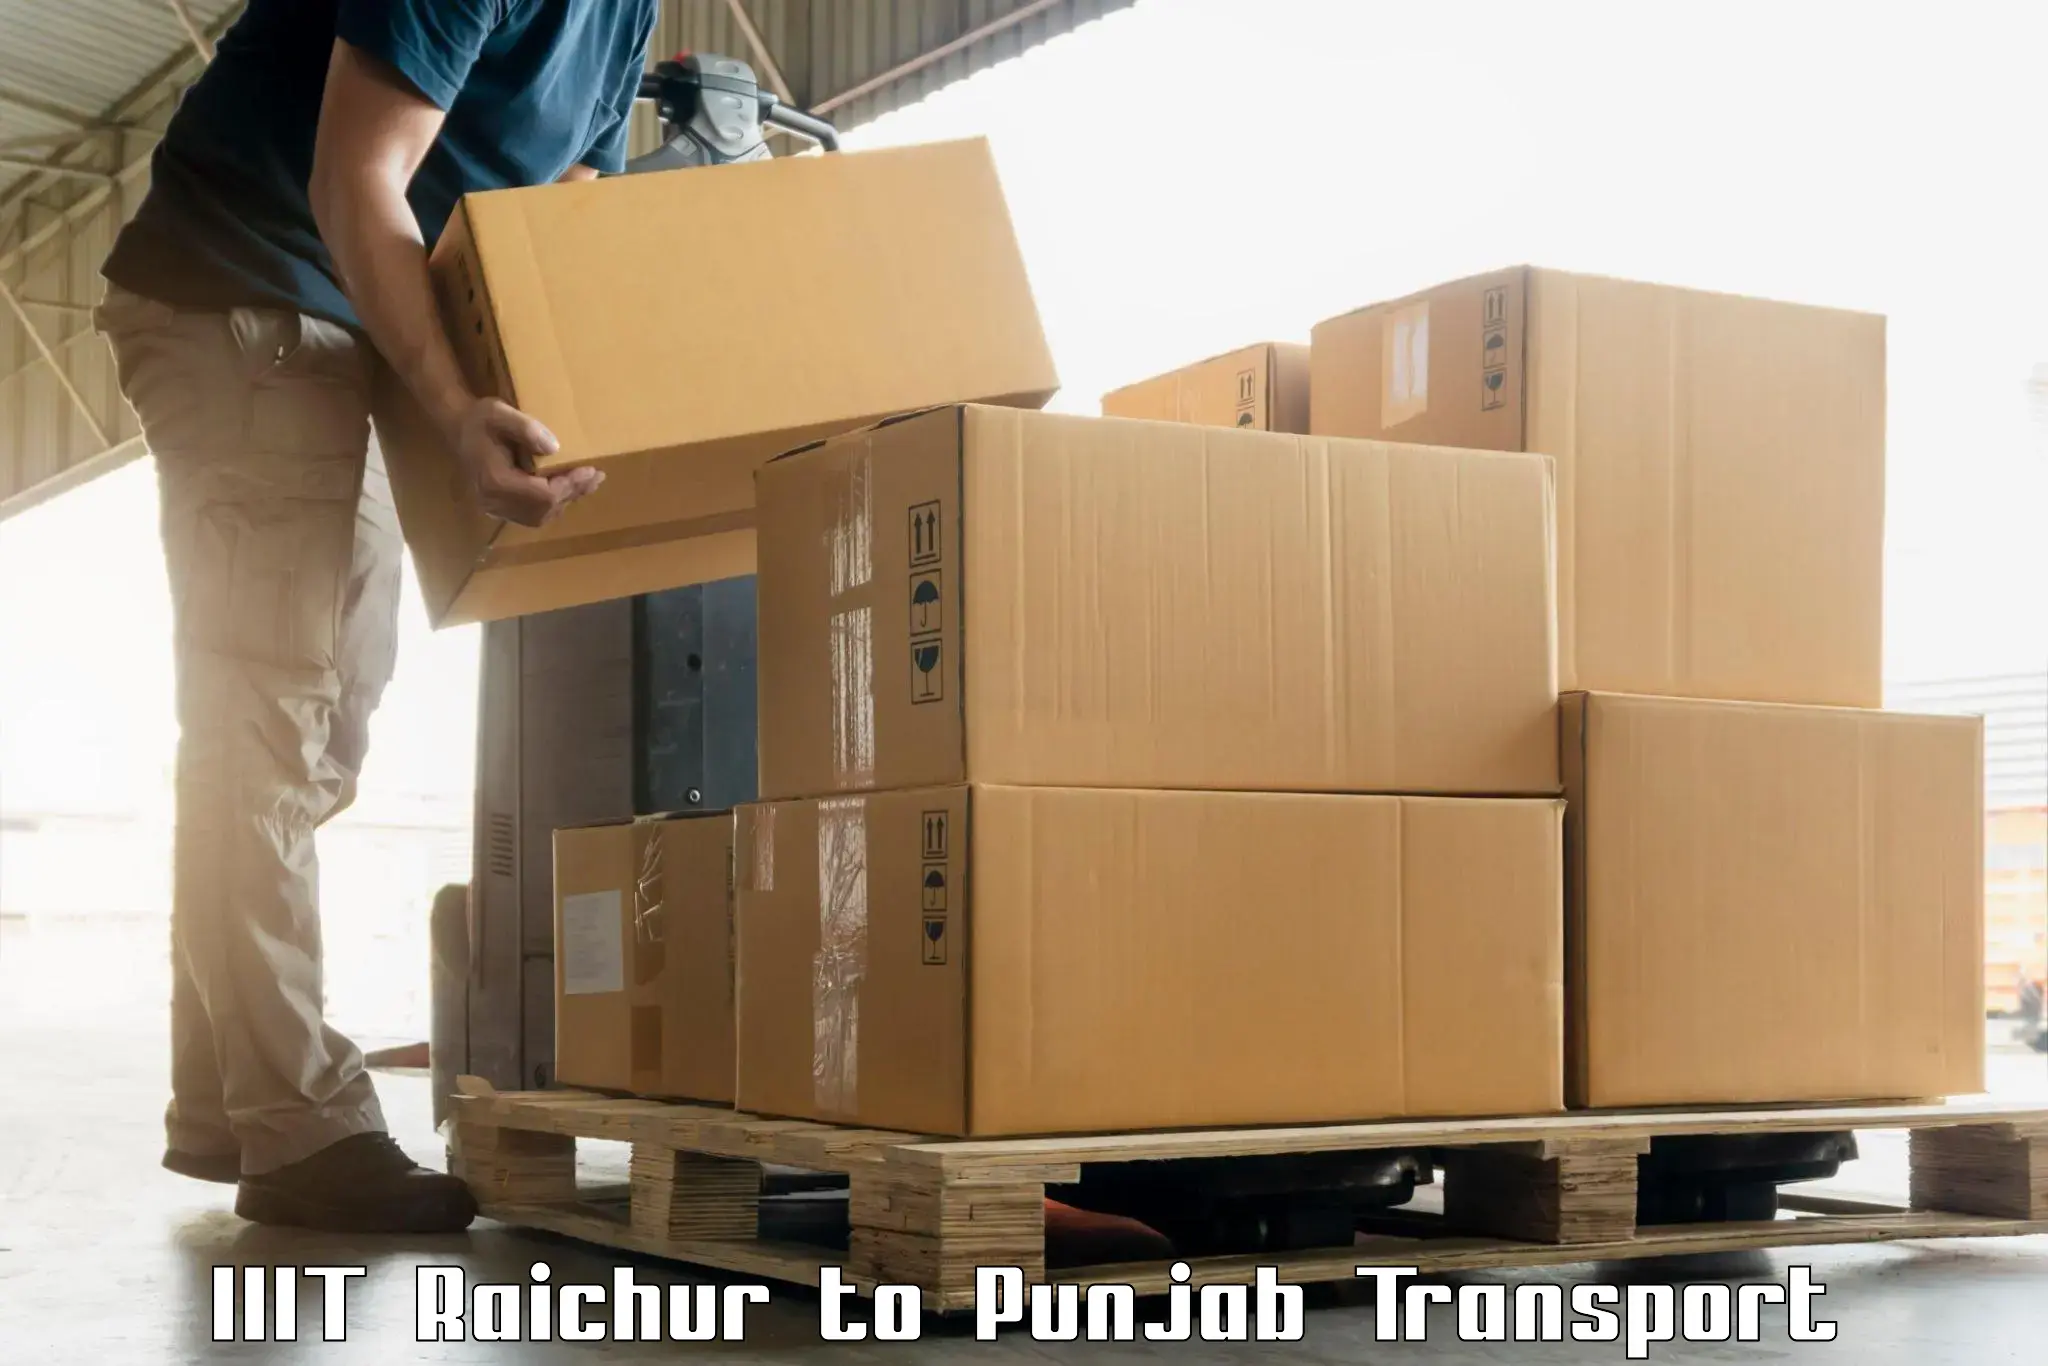 Vehicle transport services IIIT Raichur to Kotkapura